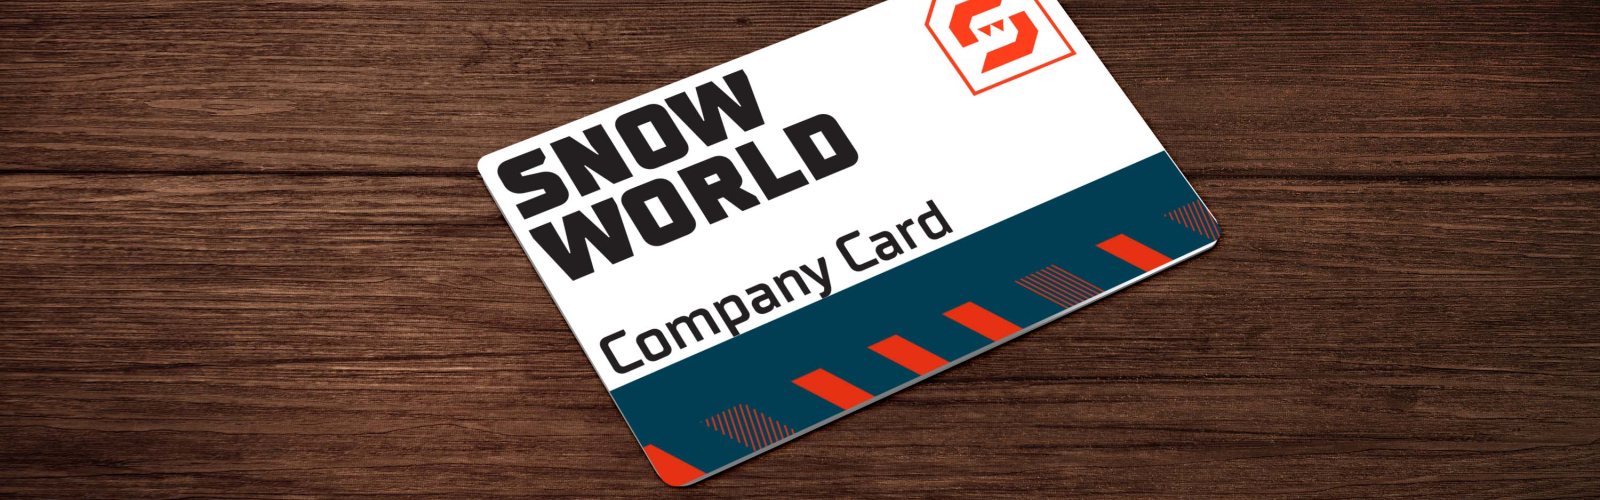 SnowWorld gift card